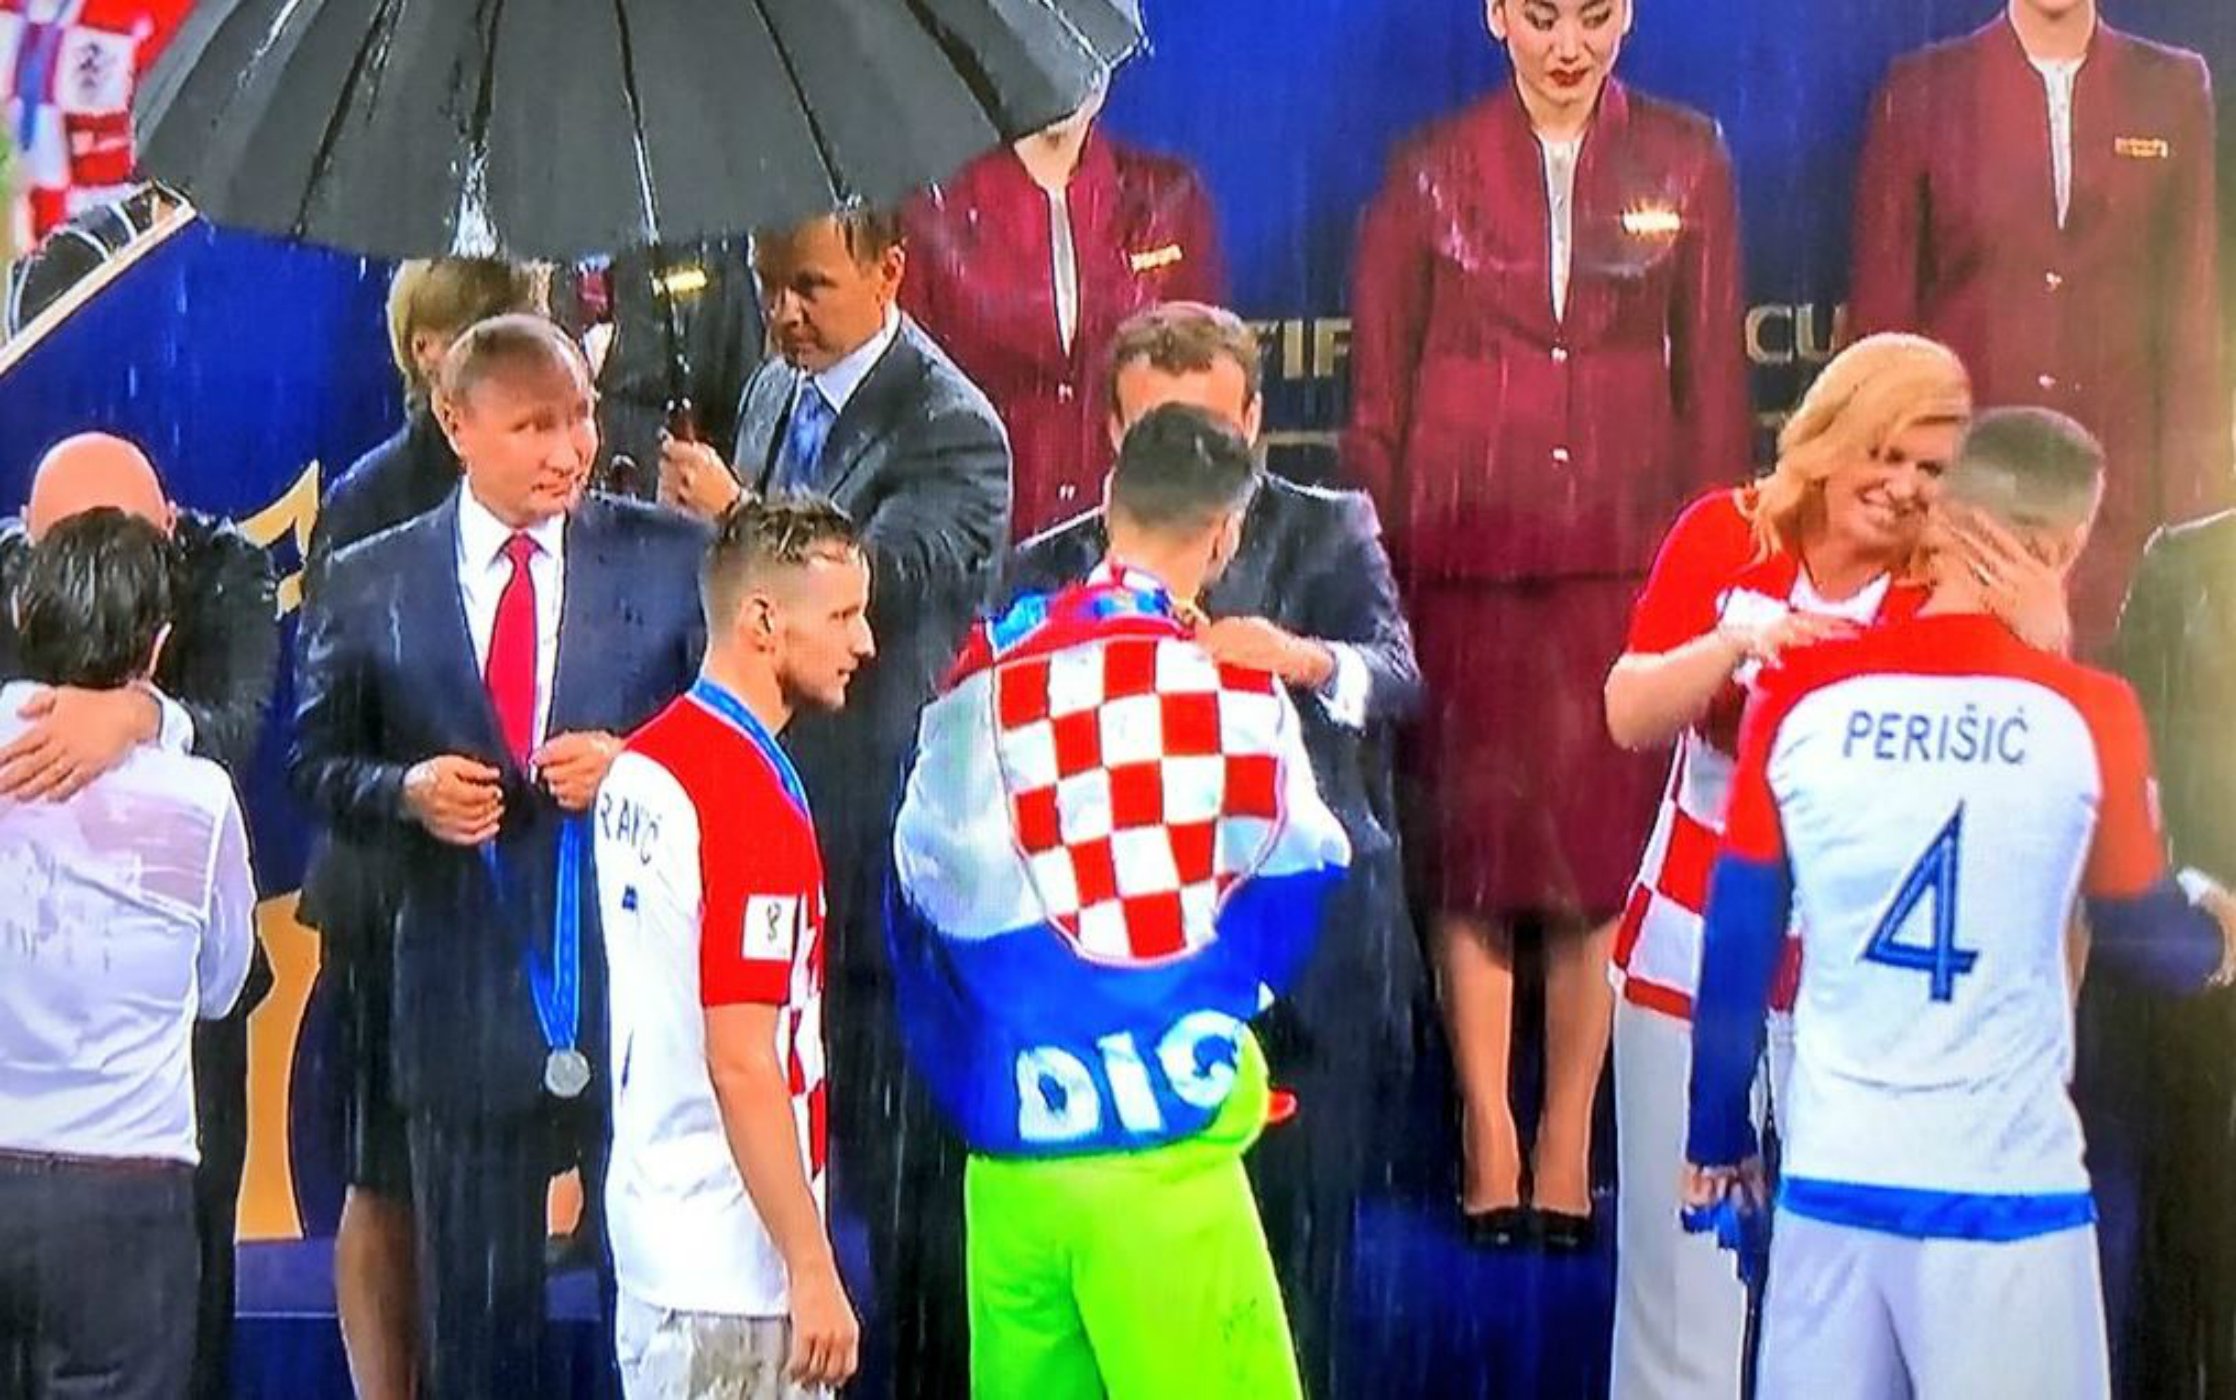 El Mundial només té un paraigua (i és per a Putin)